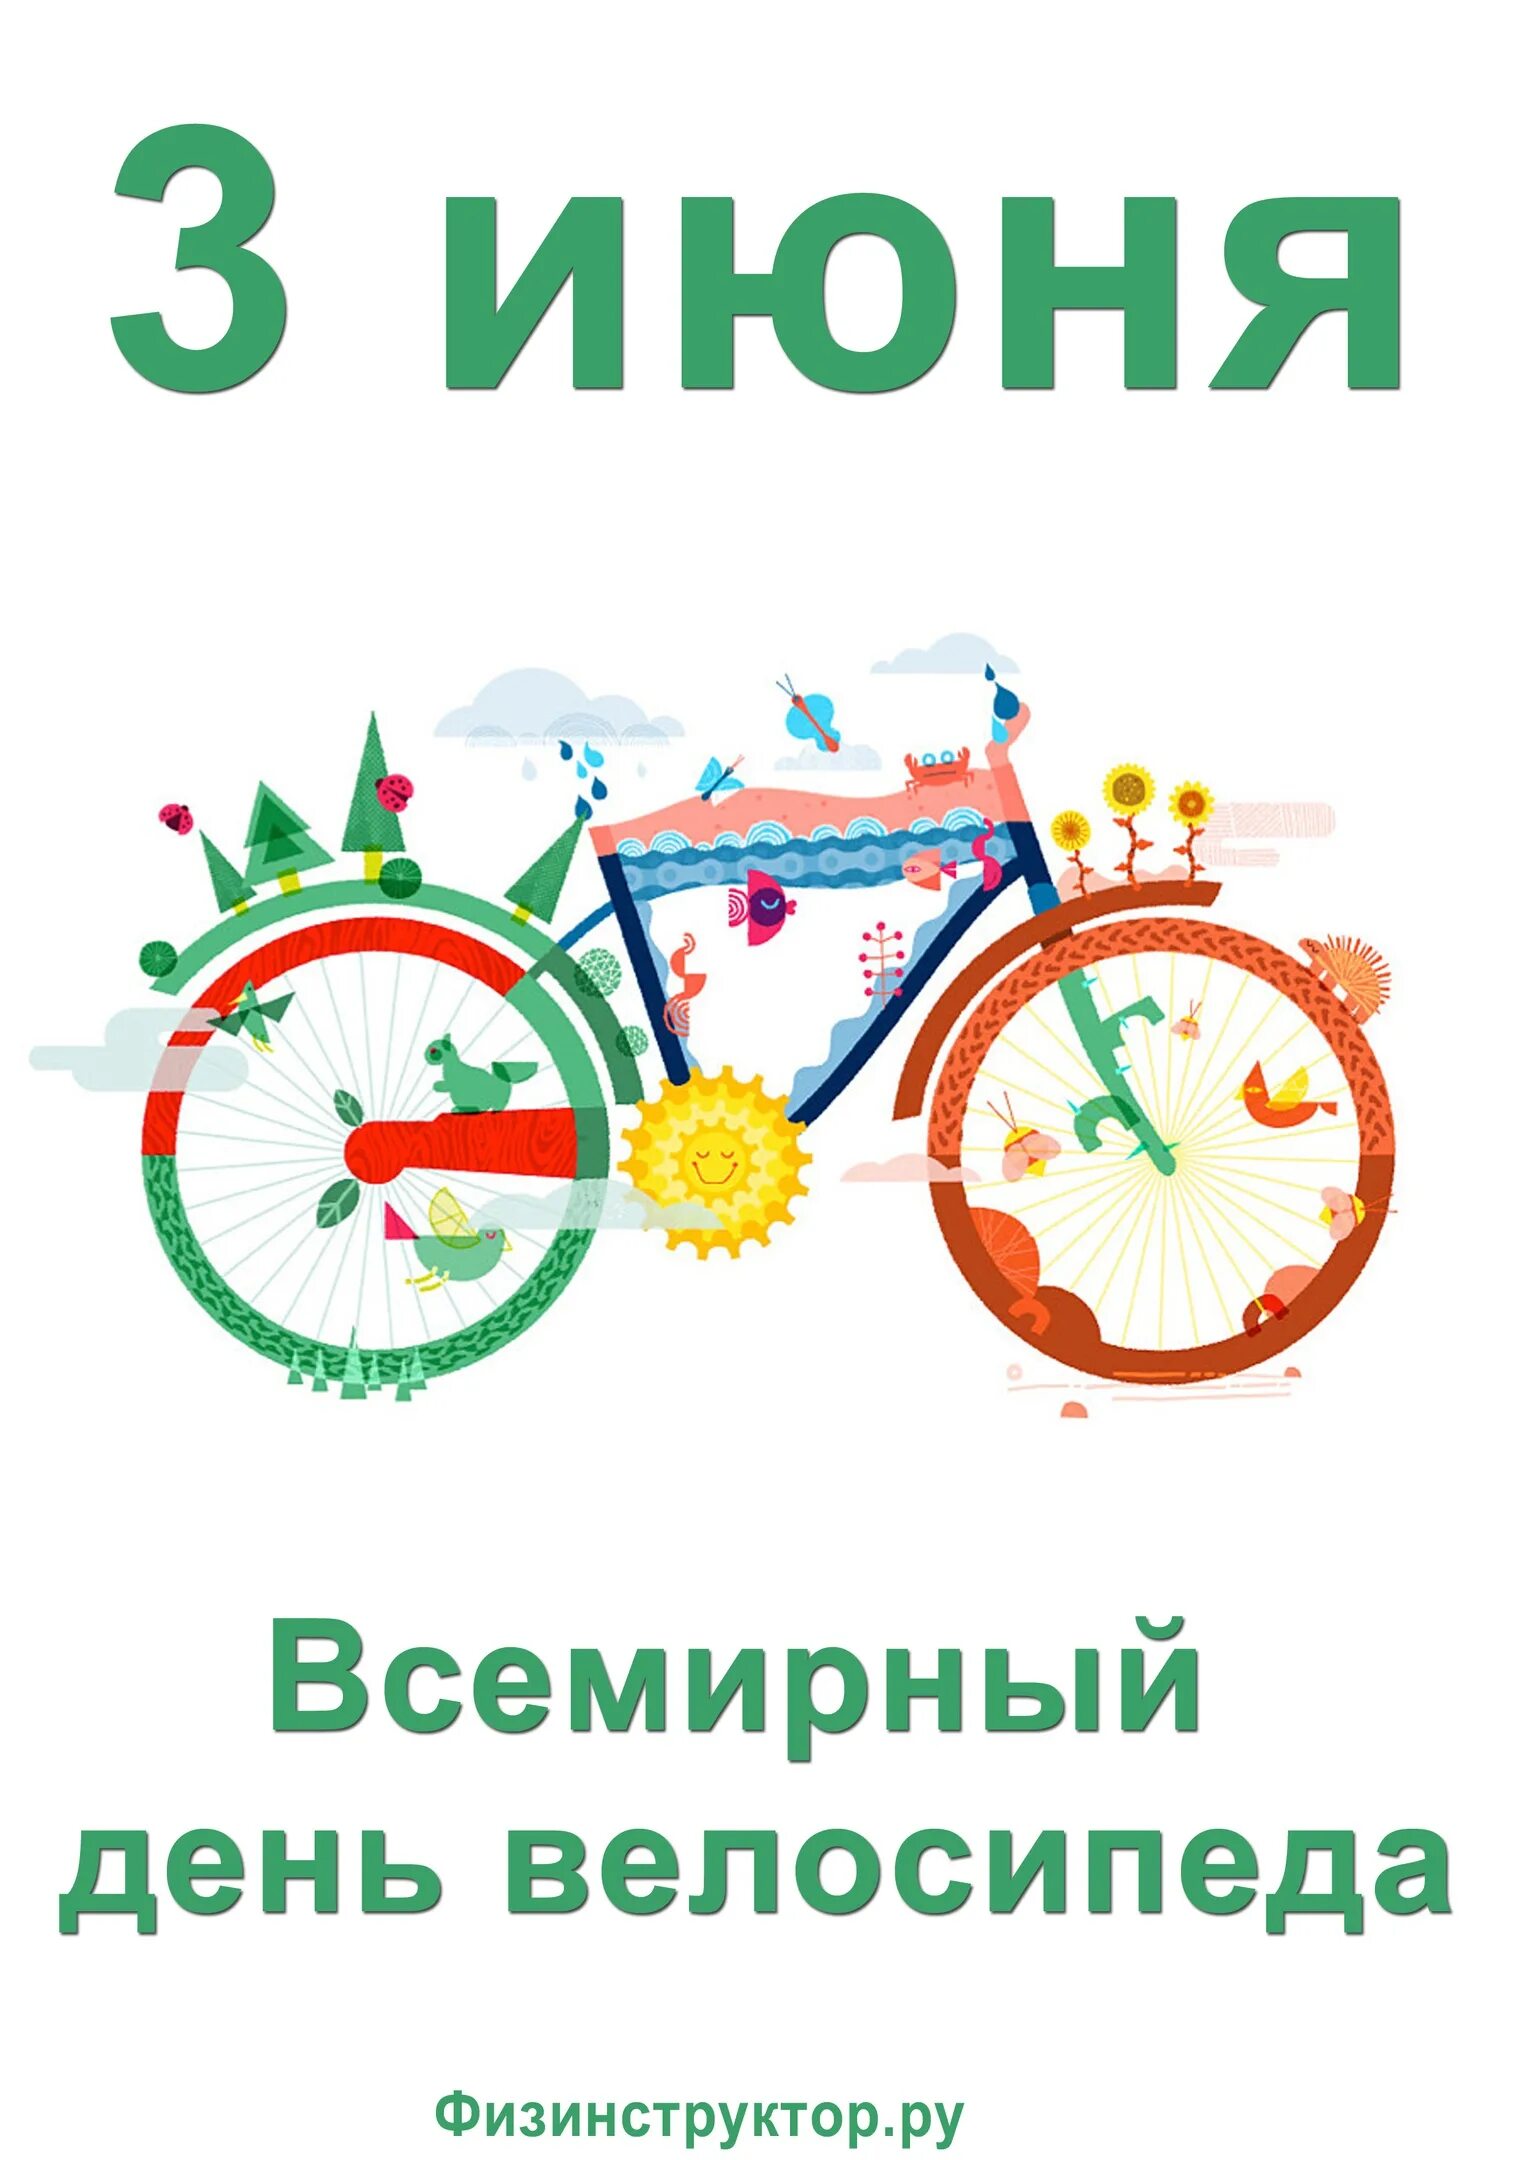 3 Июня праздник Всемирный день велосипеда. 3 Июня день велосипеда. 03 Июня - Всемирный день велосипеда. Всемирный день велосипеда поздравления.